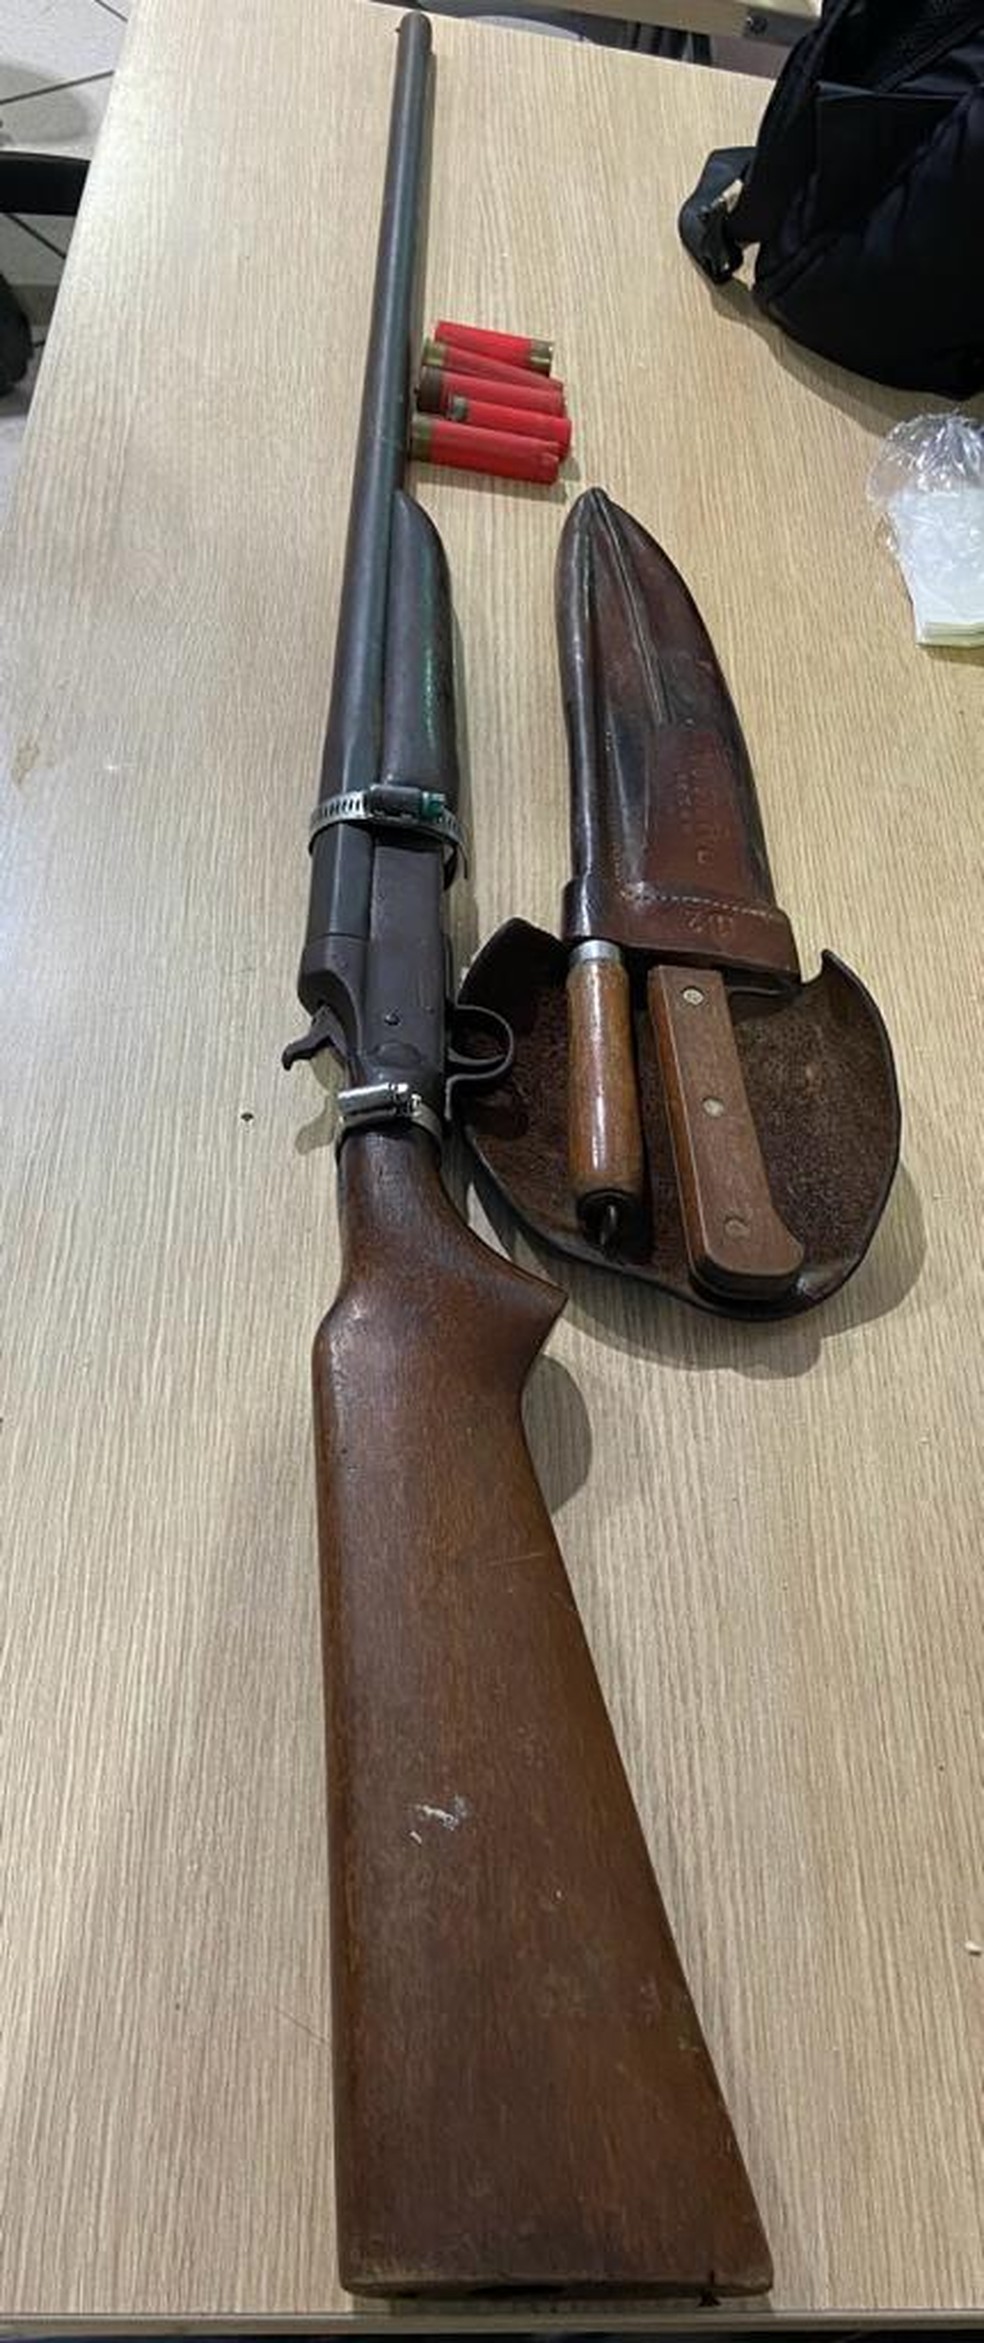 Arma usada pelo suspeito  — Foto: Polícia Civil/ divulgação